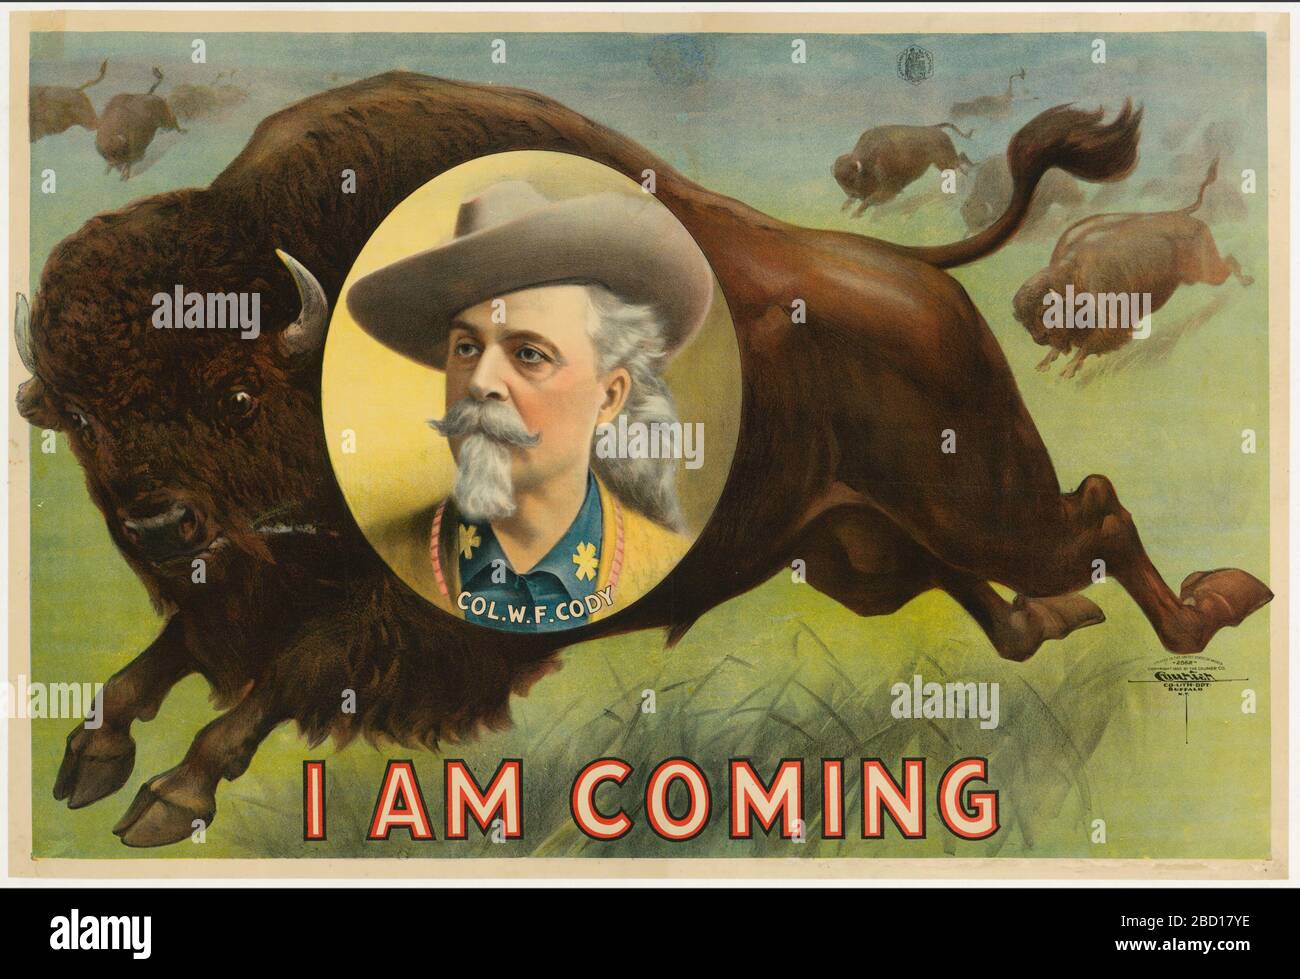 Buffalo Bill Cody. Für einen großen Förderer wie Colonel William F. Cody erforderte der semireligiöse Satz "I am Coming" größere Buchstaben auf diesem Plakat als die Identifizierung des Gesichts, das jeder bereits erkennen würde. NPG.87.55 Stockfoto